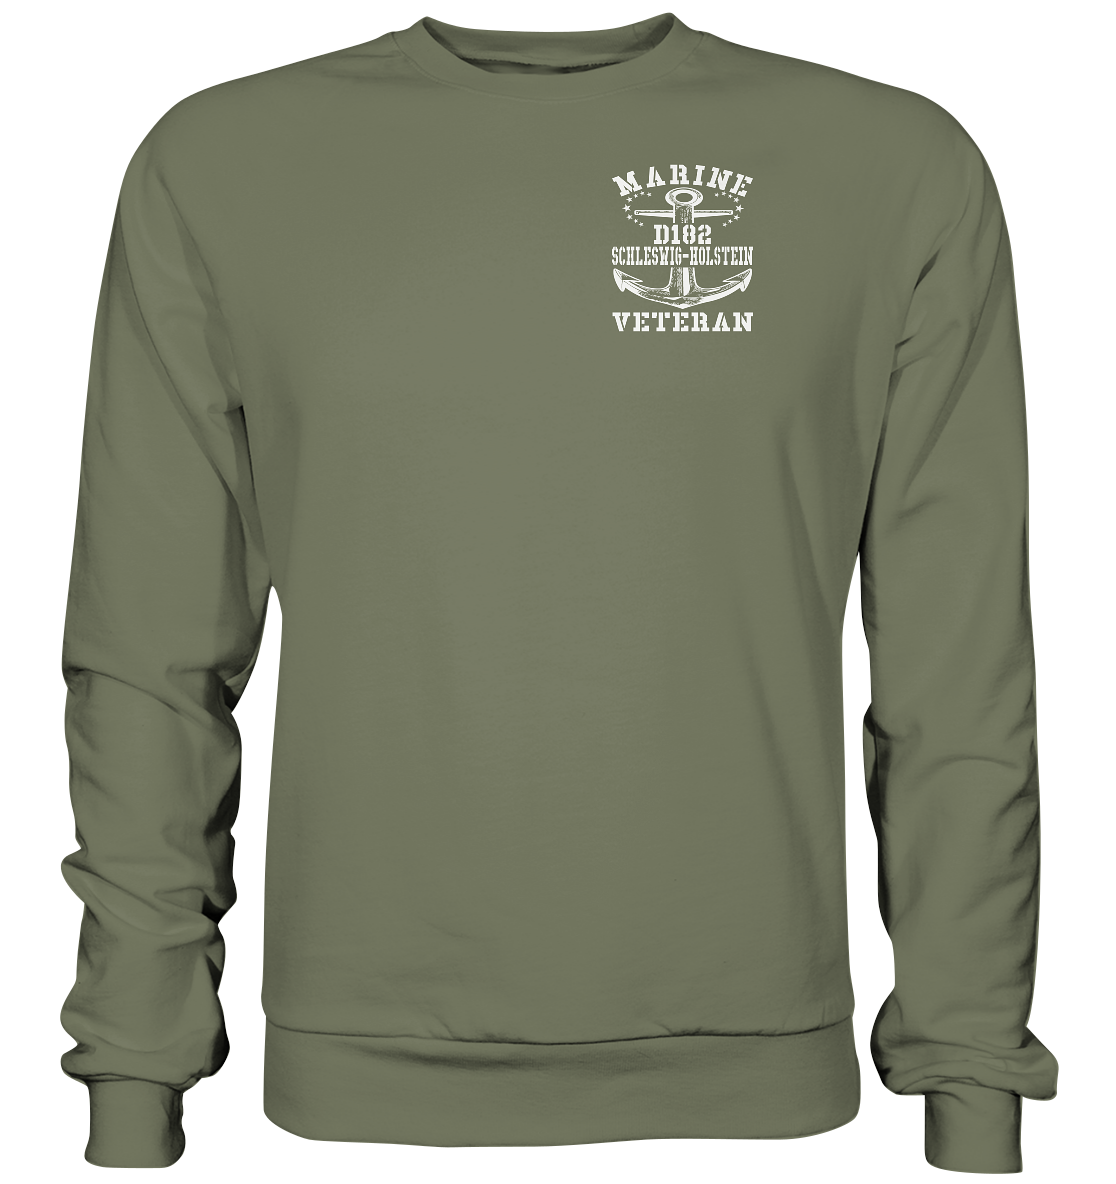 D182 Zerstörer SCHLESWIG-HOLSTEIN Marine Veteran Brustlogo - Premium Sweatshirt